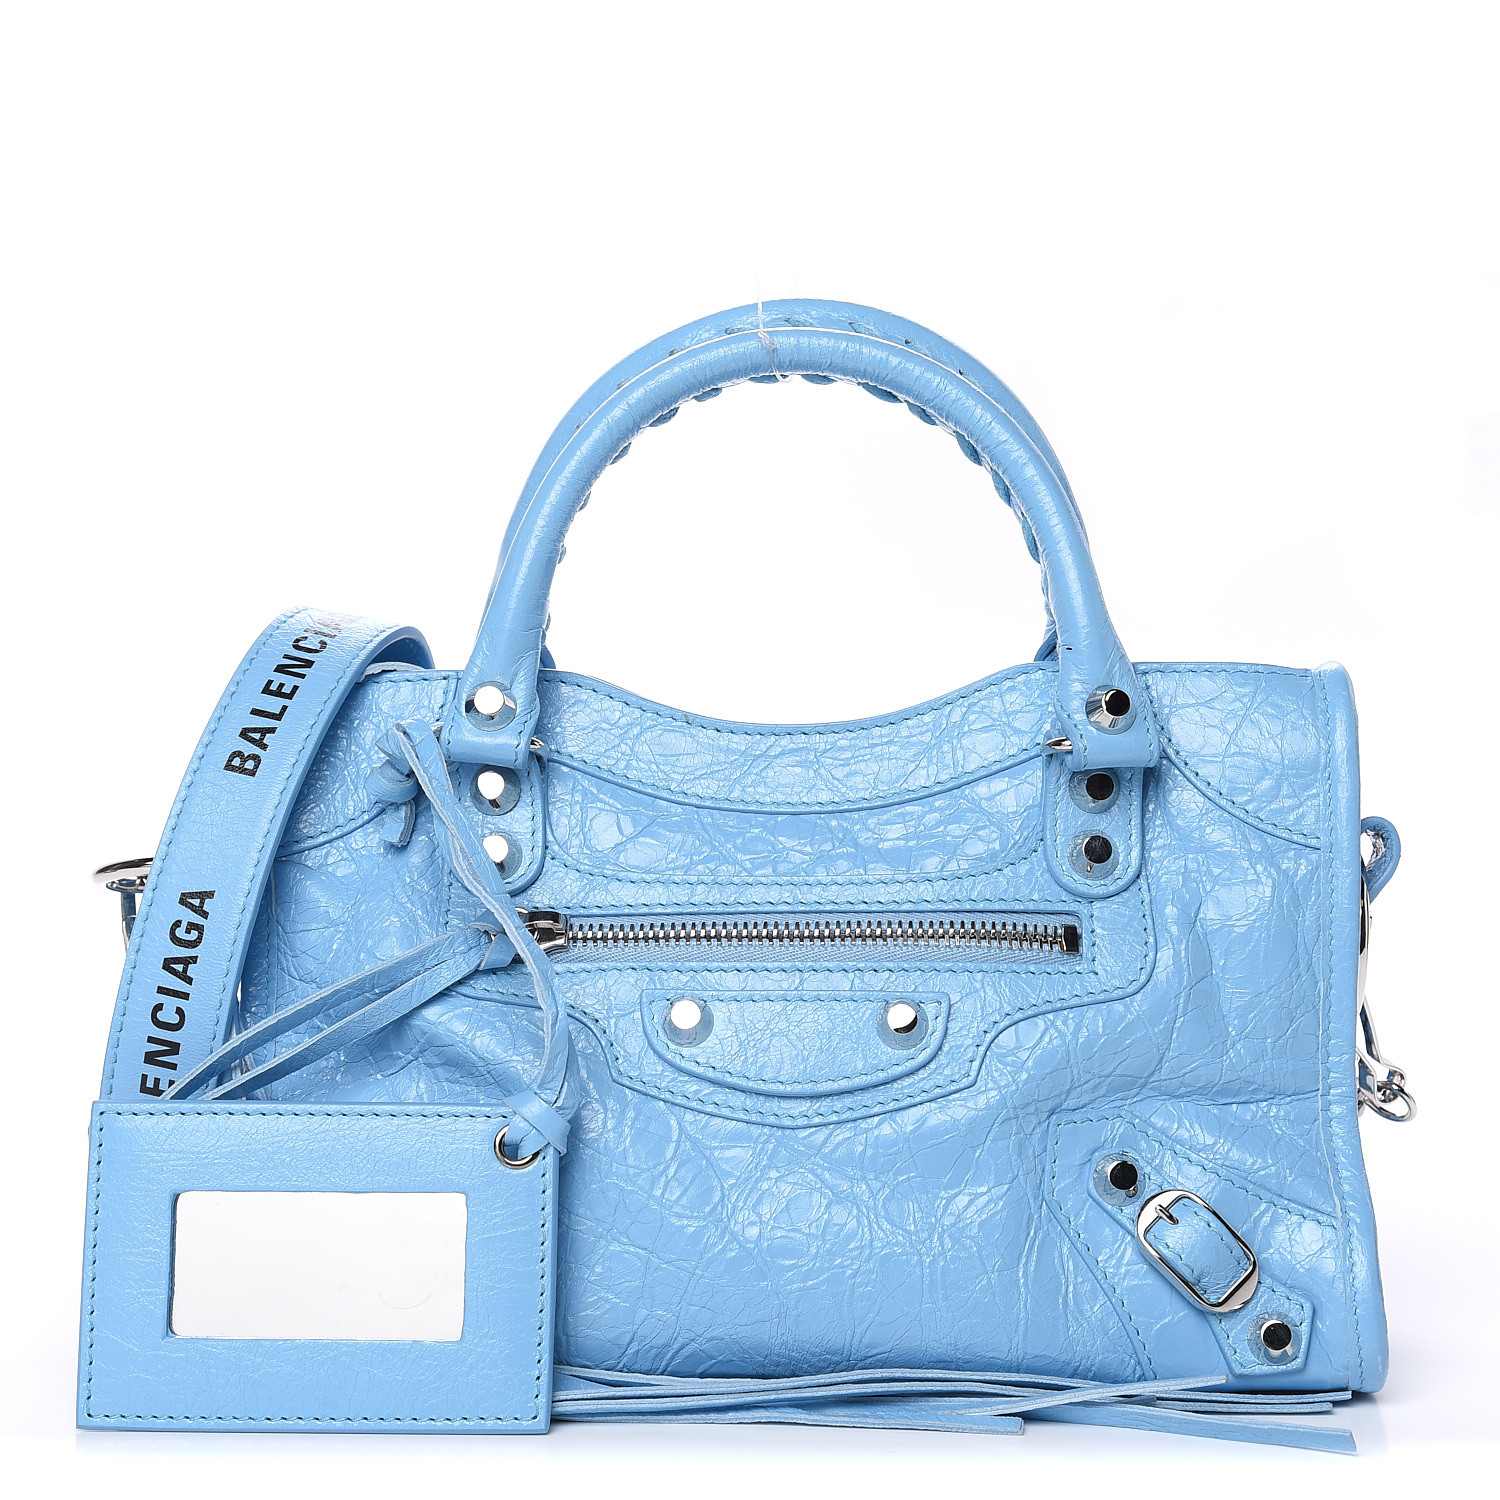 baby blue balenciaga bag